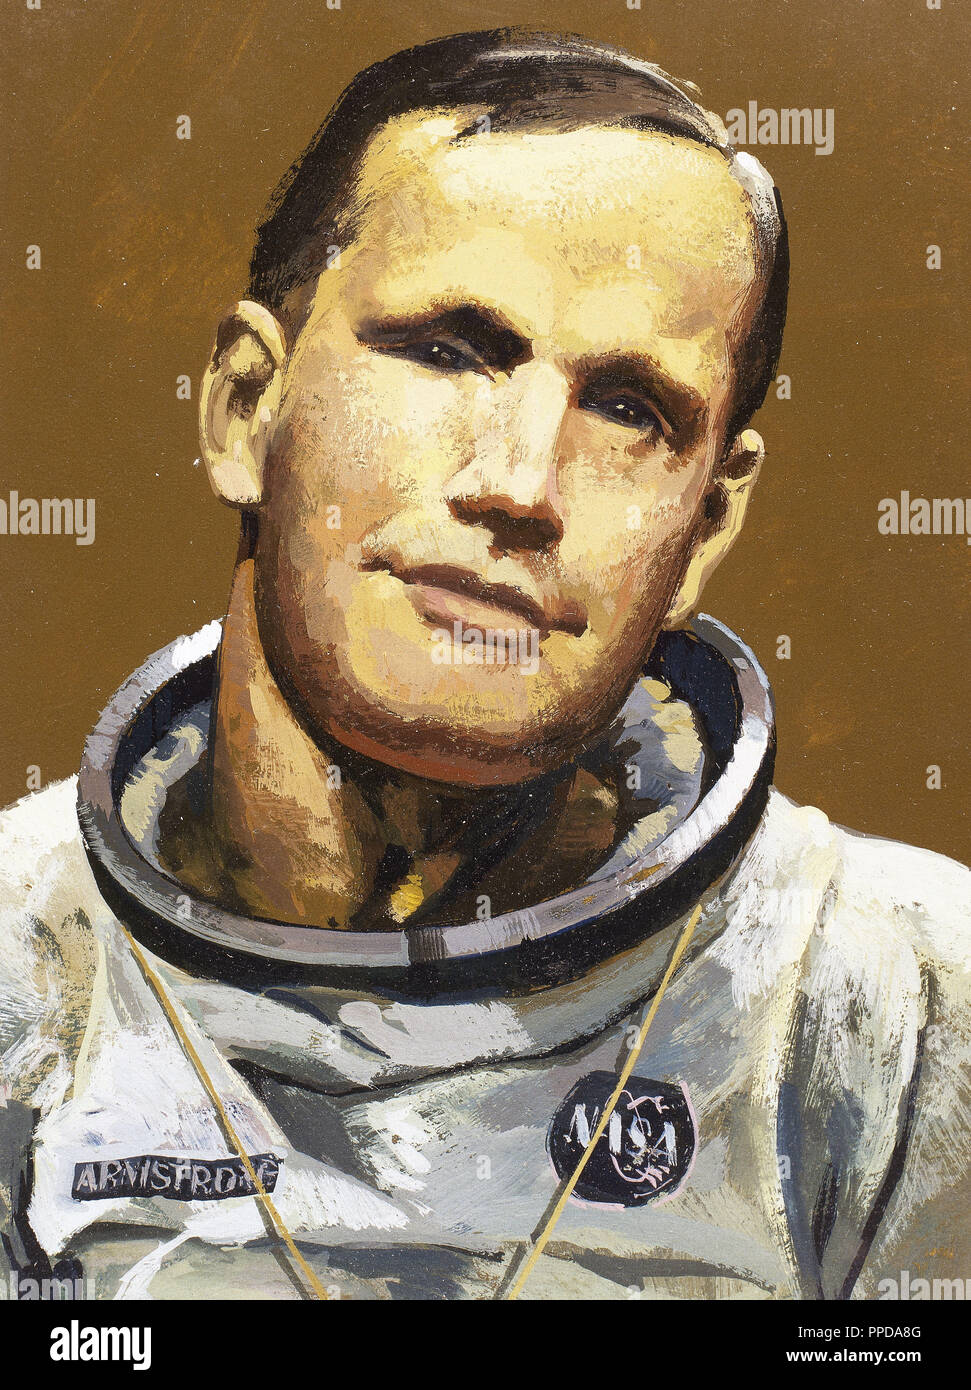 Armstrong, Neil (1930). Astronauta americano. Ha partecipato come comandante della missione lunare "Apollo 11' ed è stato il primo uomo che ha camminato sulla luna (20-7-1969). Foto Stock